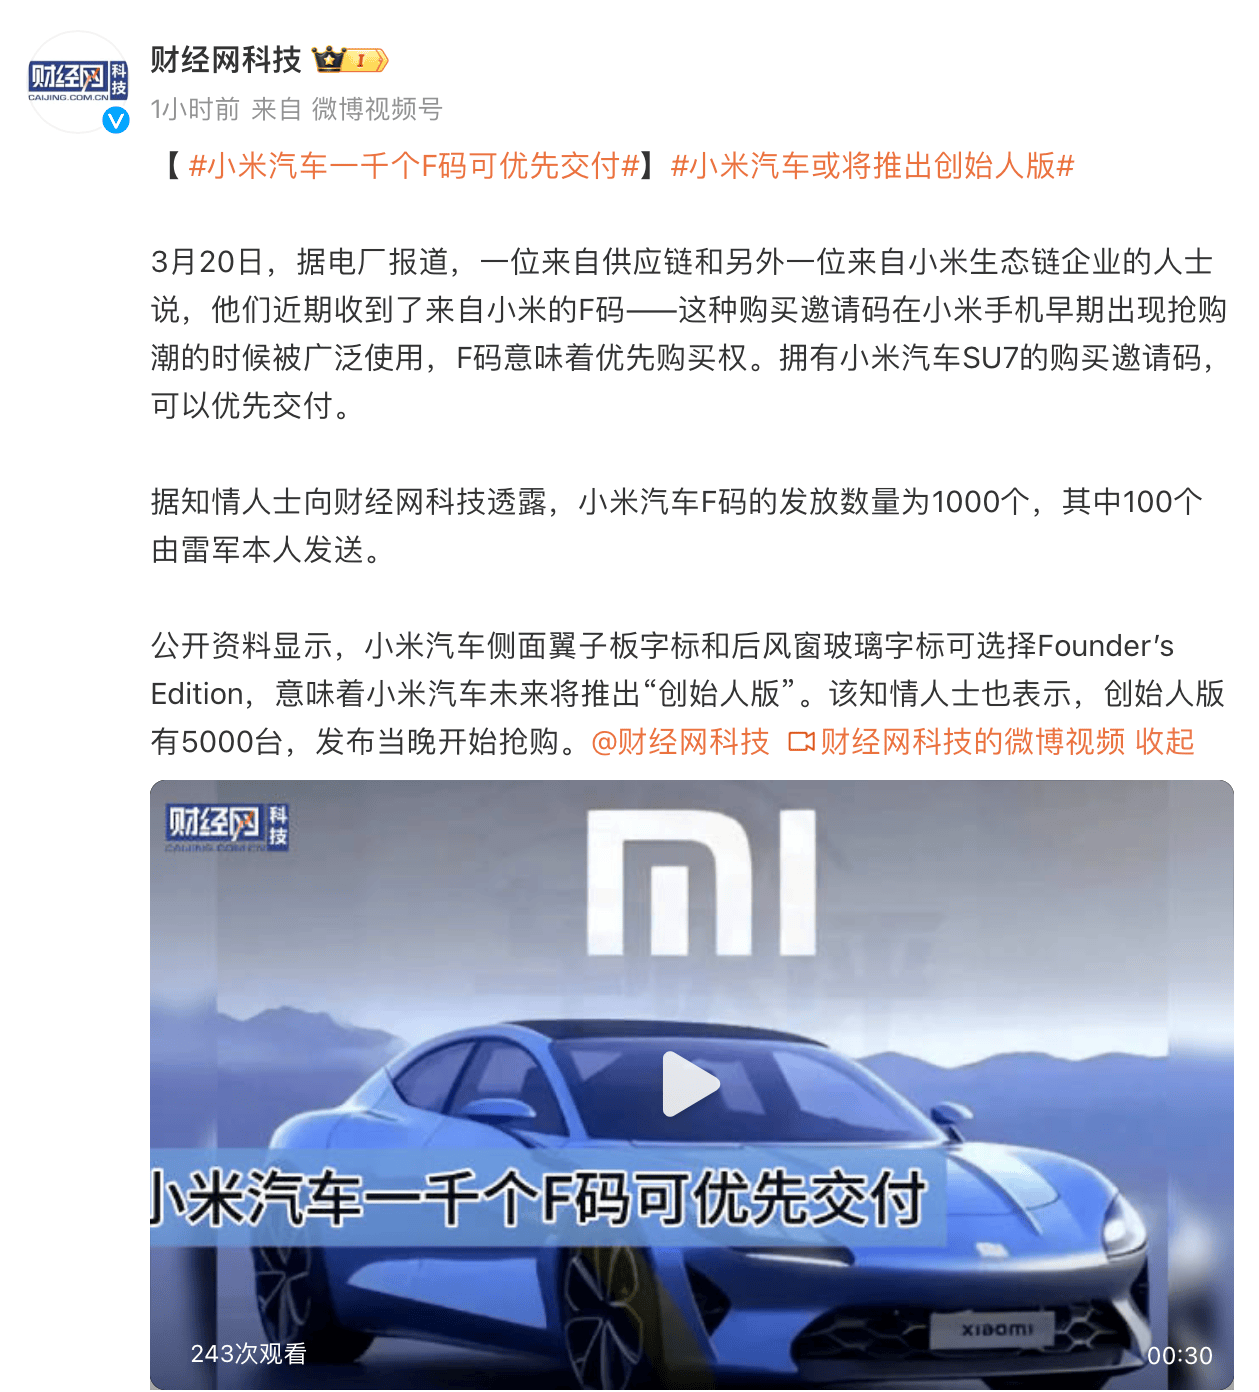 限量1000辆小米汽车将优先_搜狐汽车_ Sohu.com。